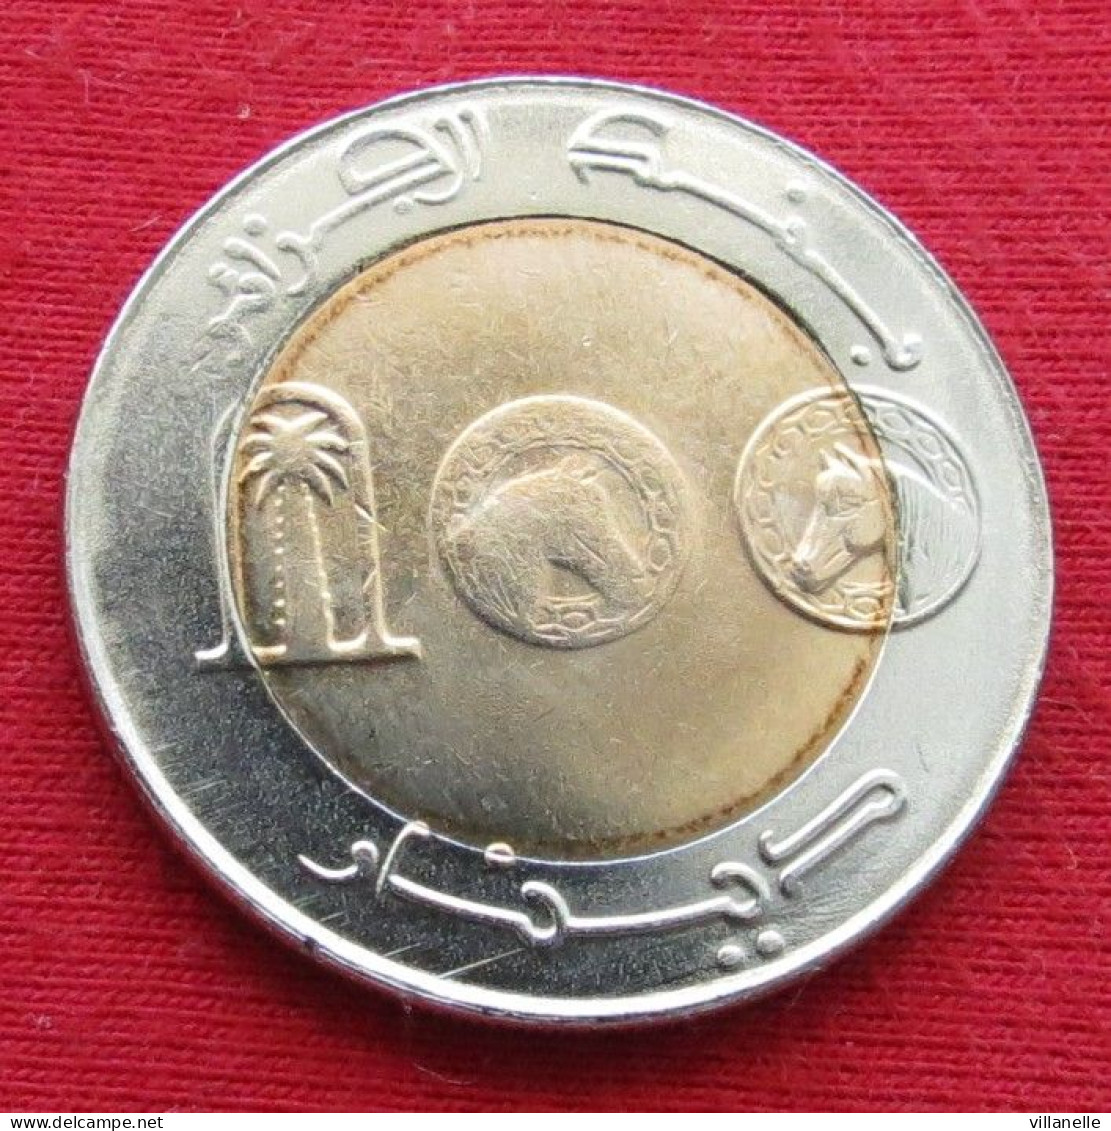 Algeria 100 Dinar 2007 Algérie Algerien Algerije Argelia  W ºº - Algerien